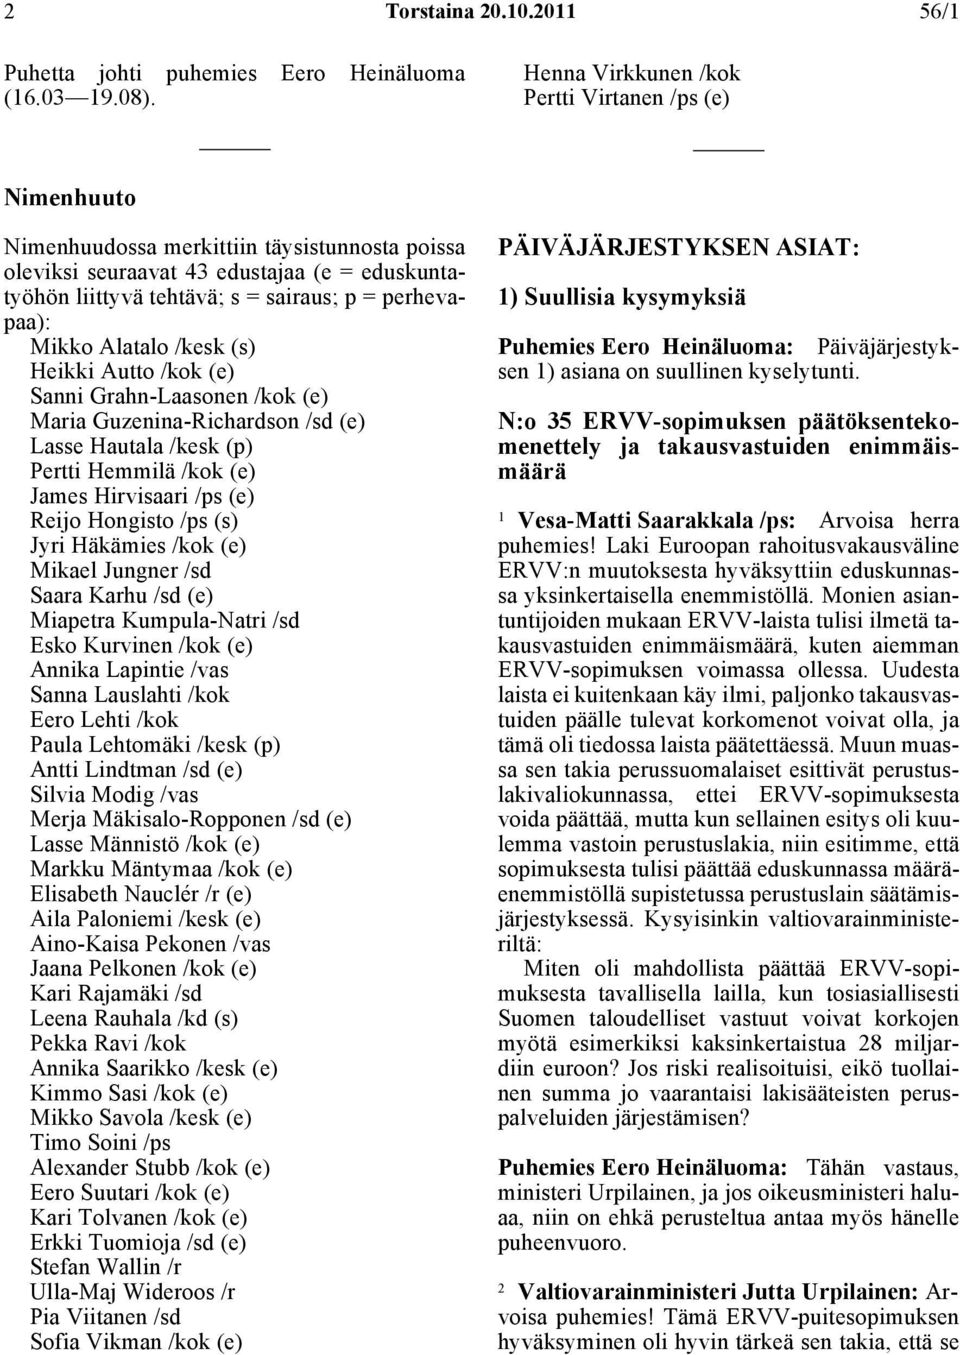 perhevapaa): Mikko Alatalo /kesk (s) Heikki Autto /kok (e) Sanni Grahn-Laasonen /kok (e) Maria Guzenina-Richardson /sd (e) Lasse Hautala /kesk (p) Pertti Hemmilä /kok (e) James Hirvisaari /ps (e)